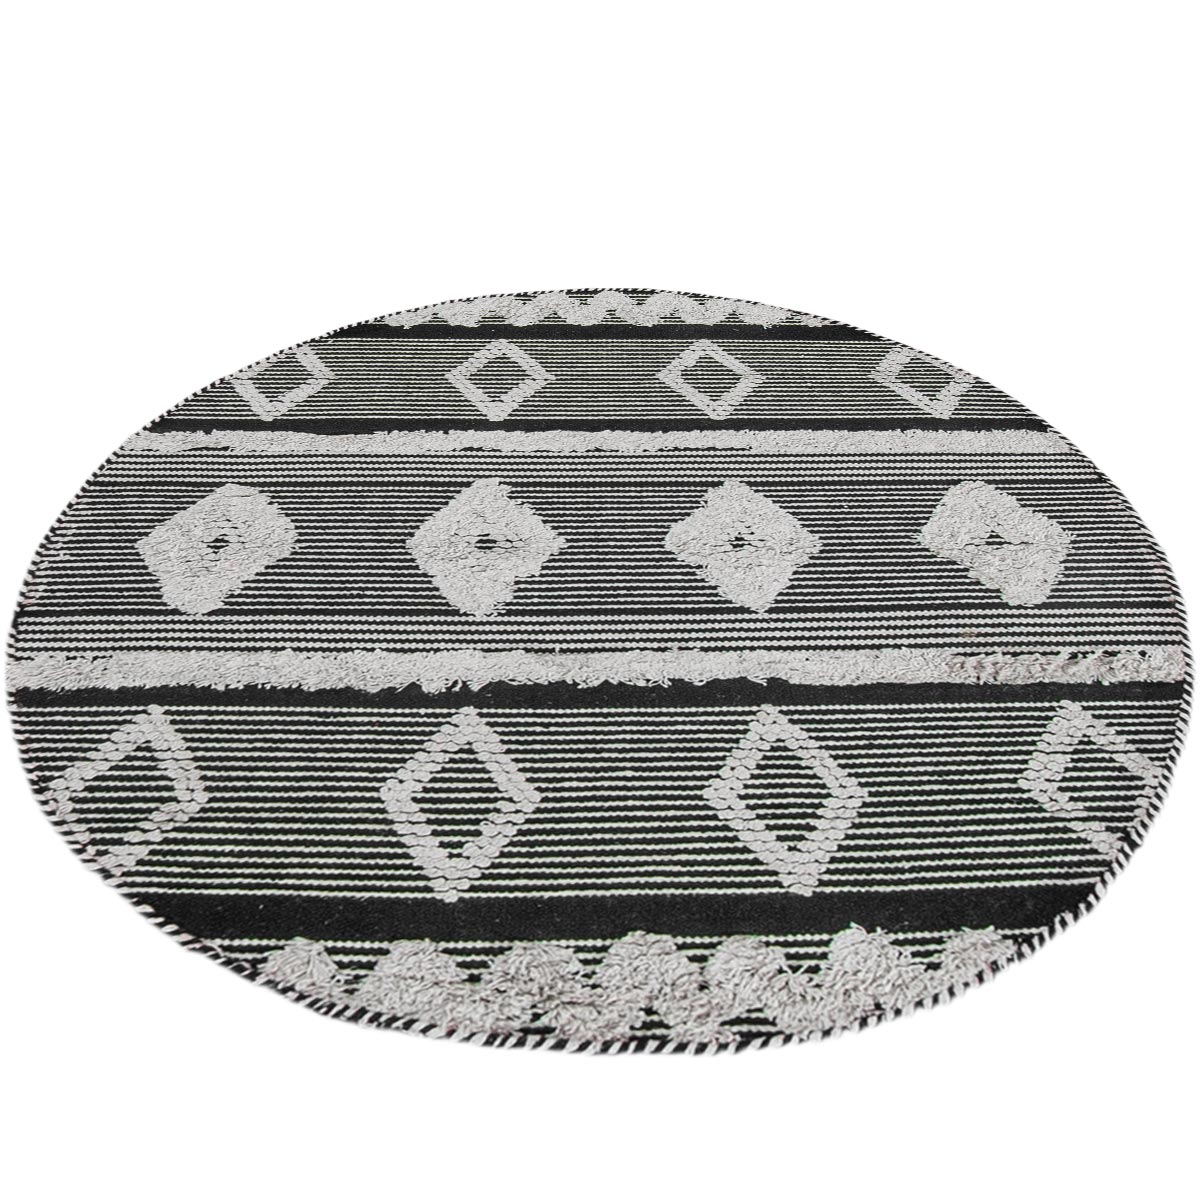 שטיח קילים סקנדינבי 12 שחור/לבן עגול | השטיח האדום